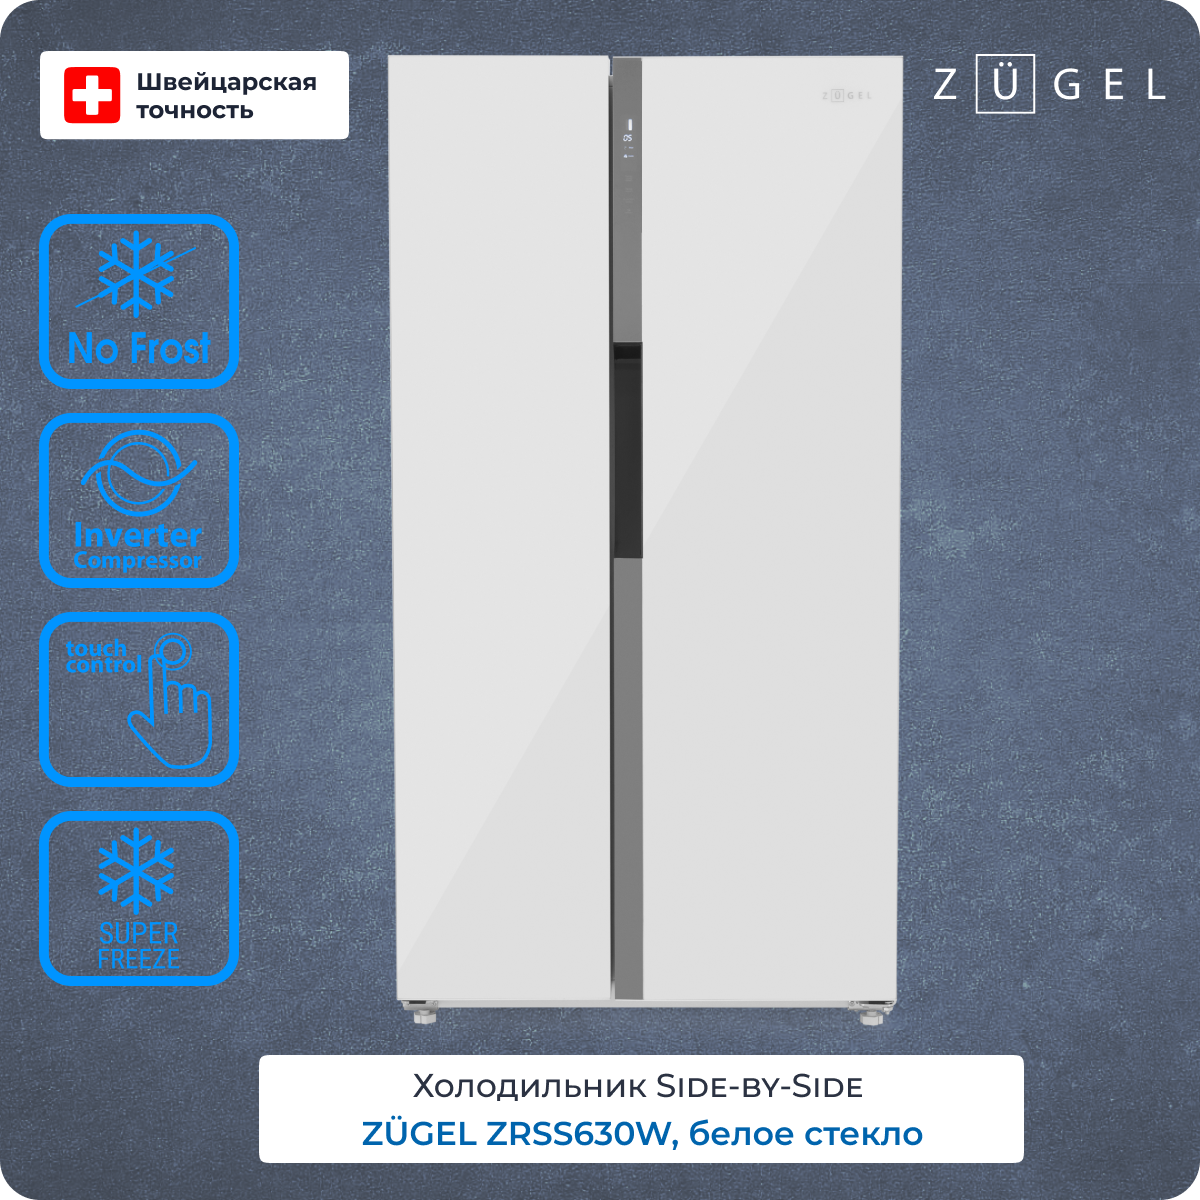 Холодильник ZUGEL ZRSS630W белый